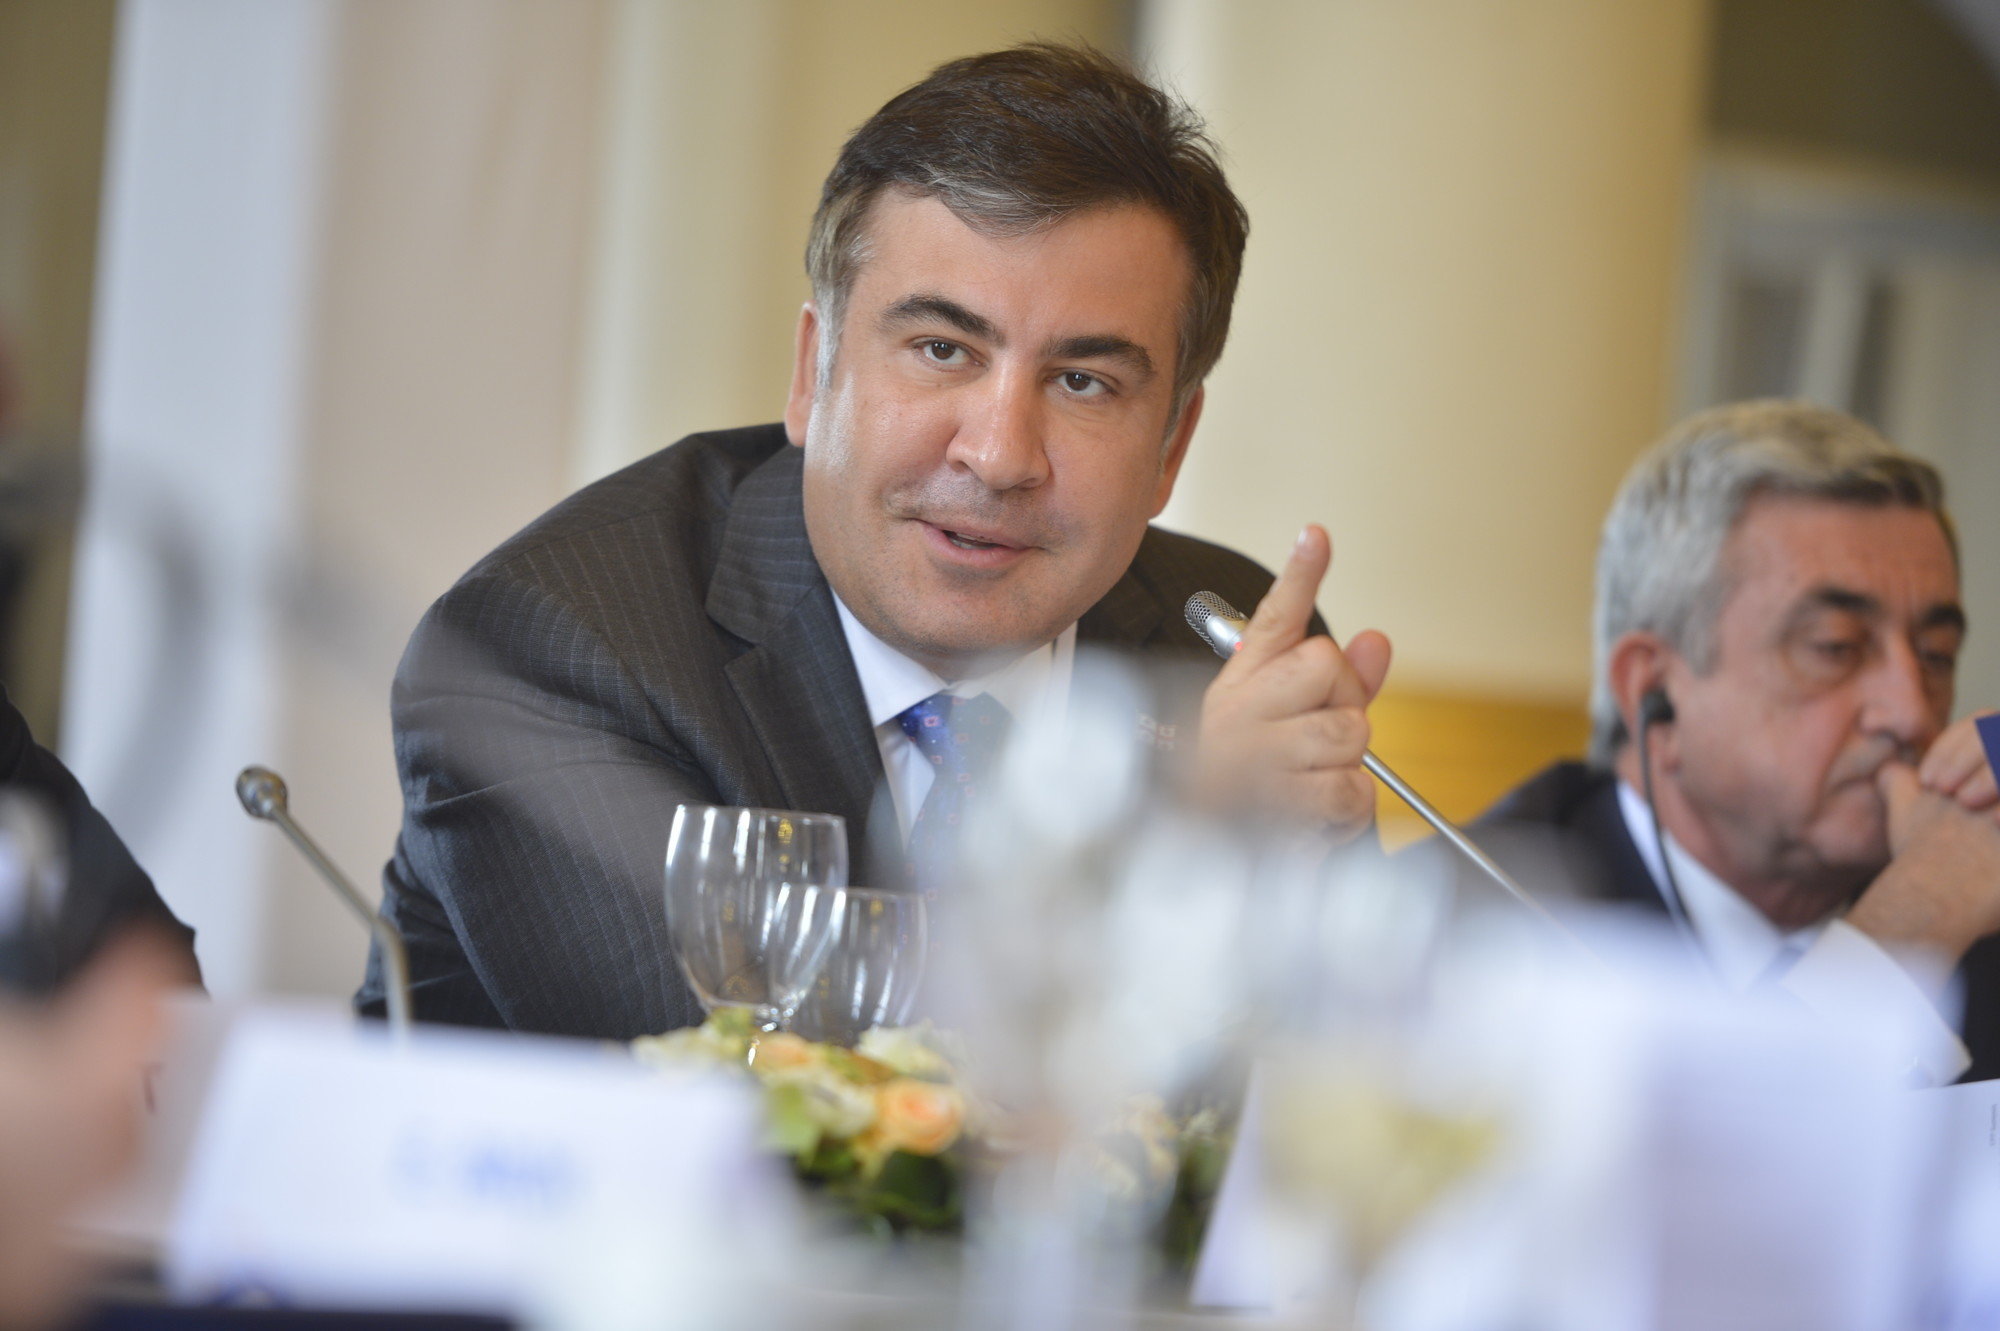 Идеи судебной реформы Саакашвили. Насколько это серьезно?